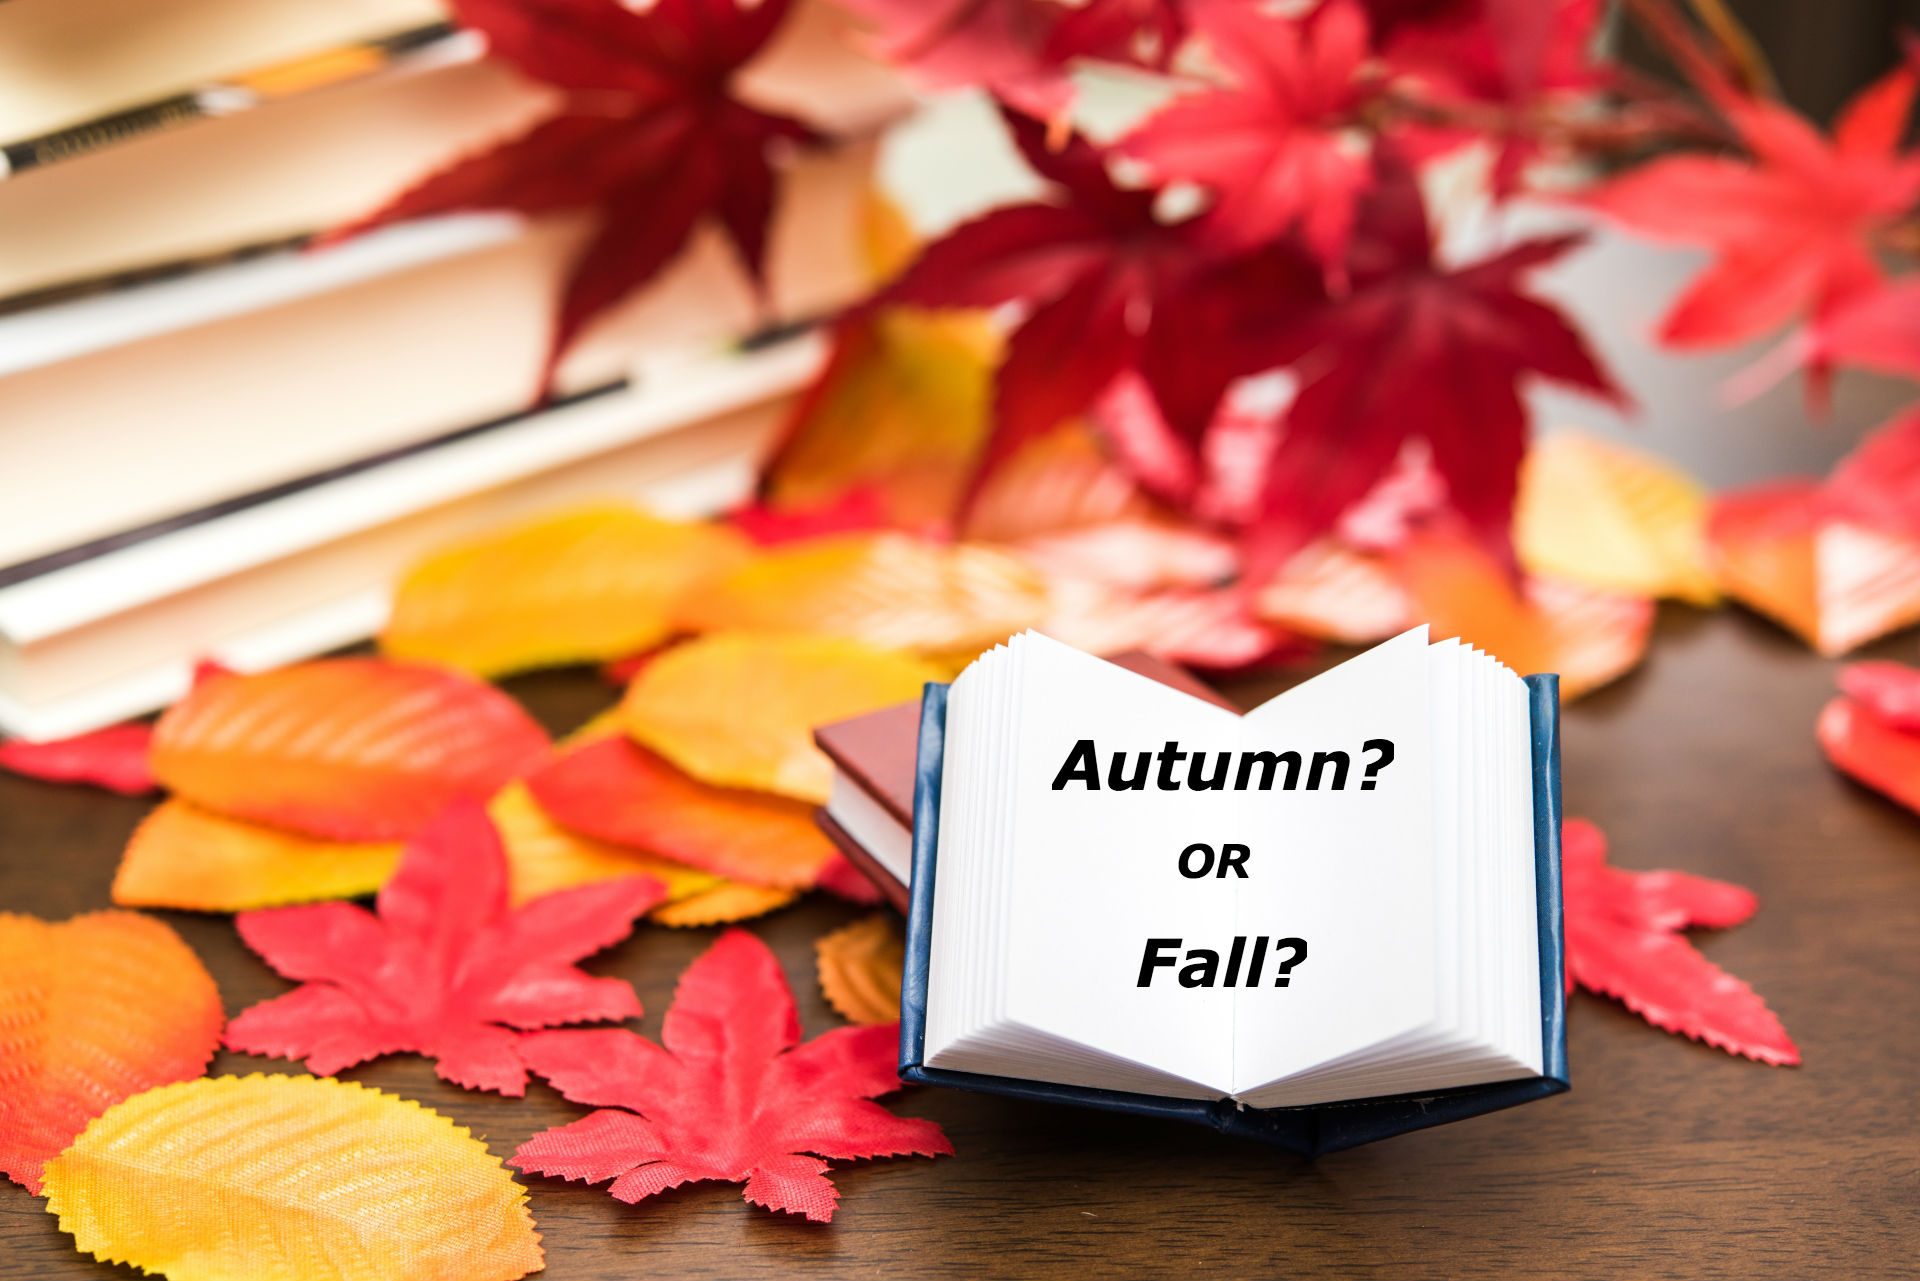 秋は Fall なの Autumn なの どっちなの Plog